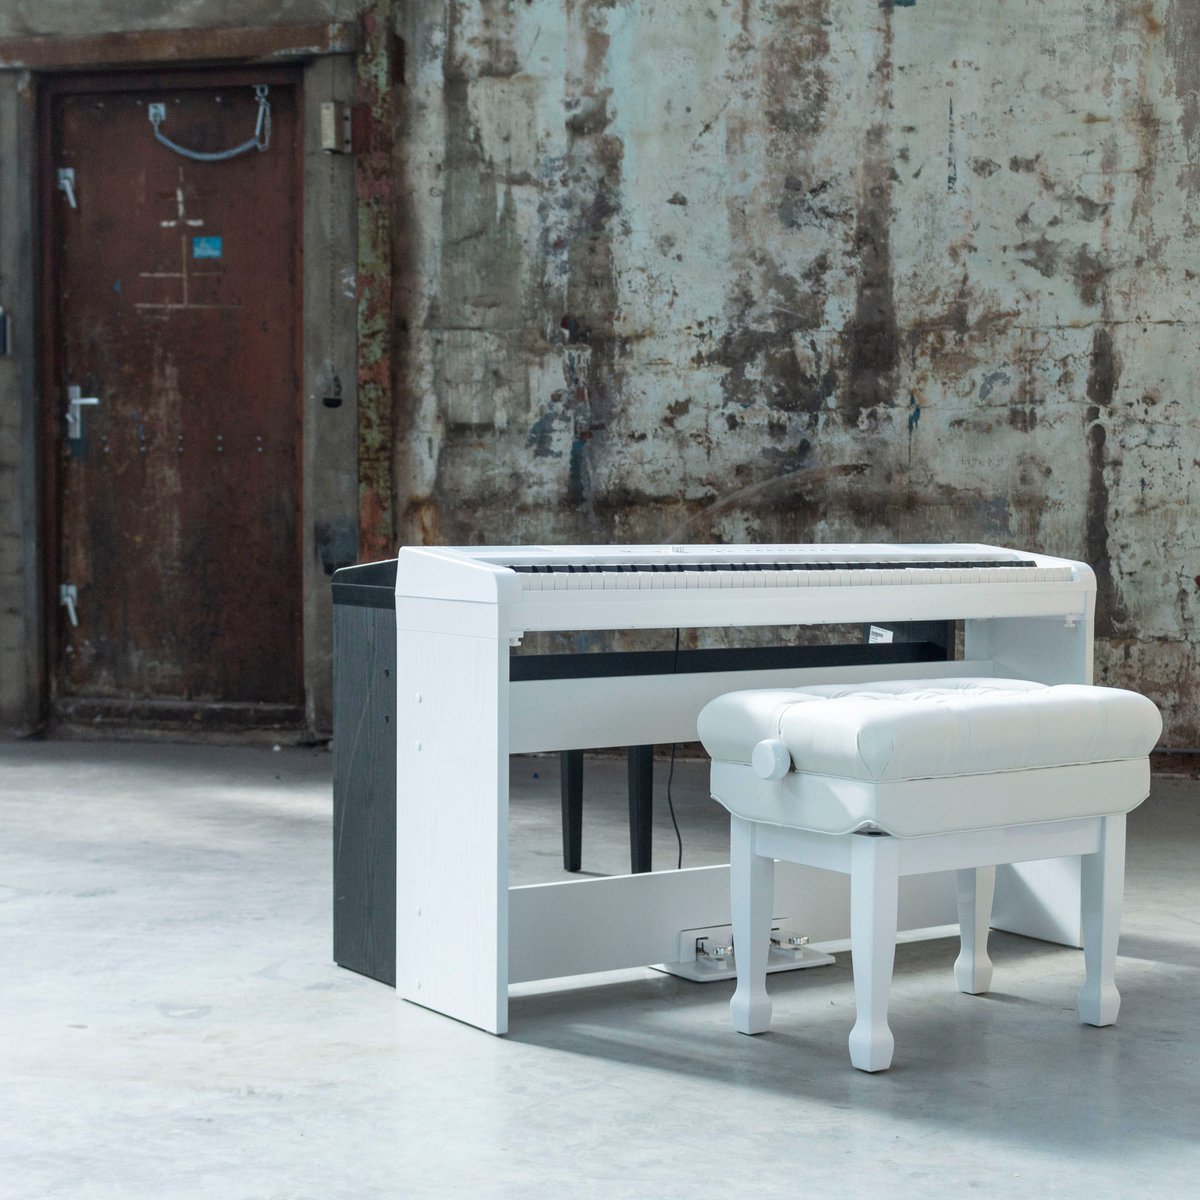 Fazley FSP-500-BK Piano numérique Noir + Cadre + Banc de piano 